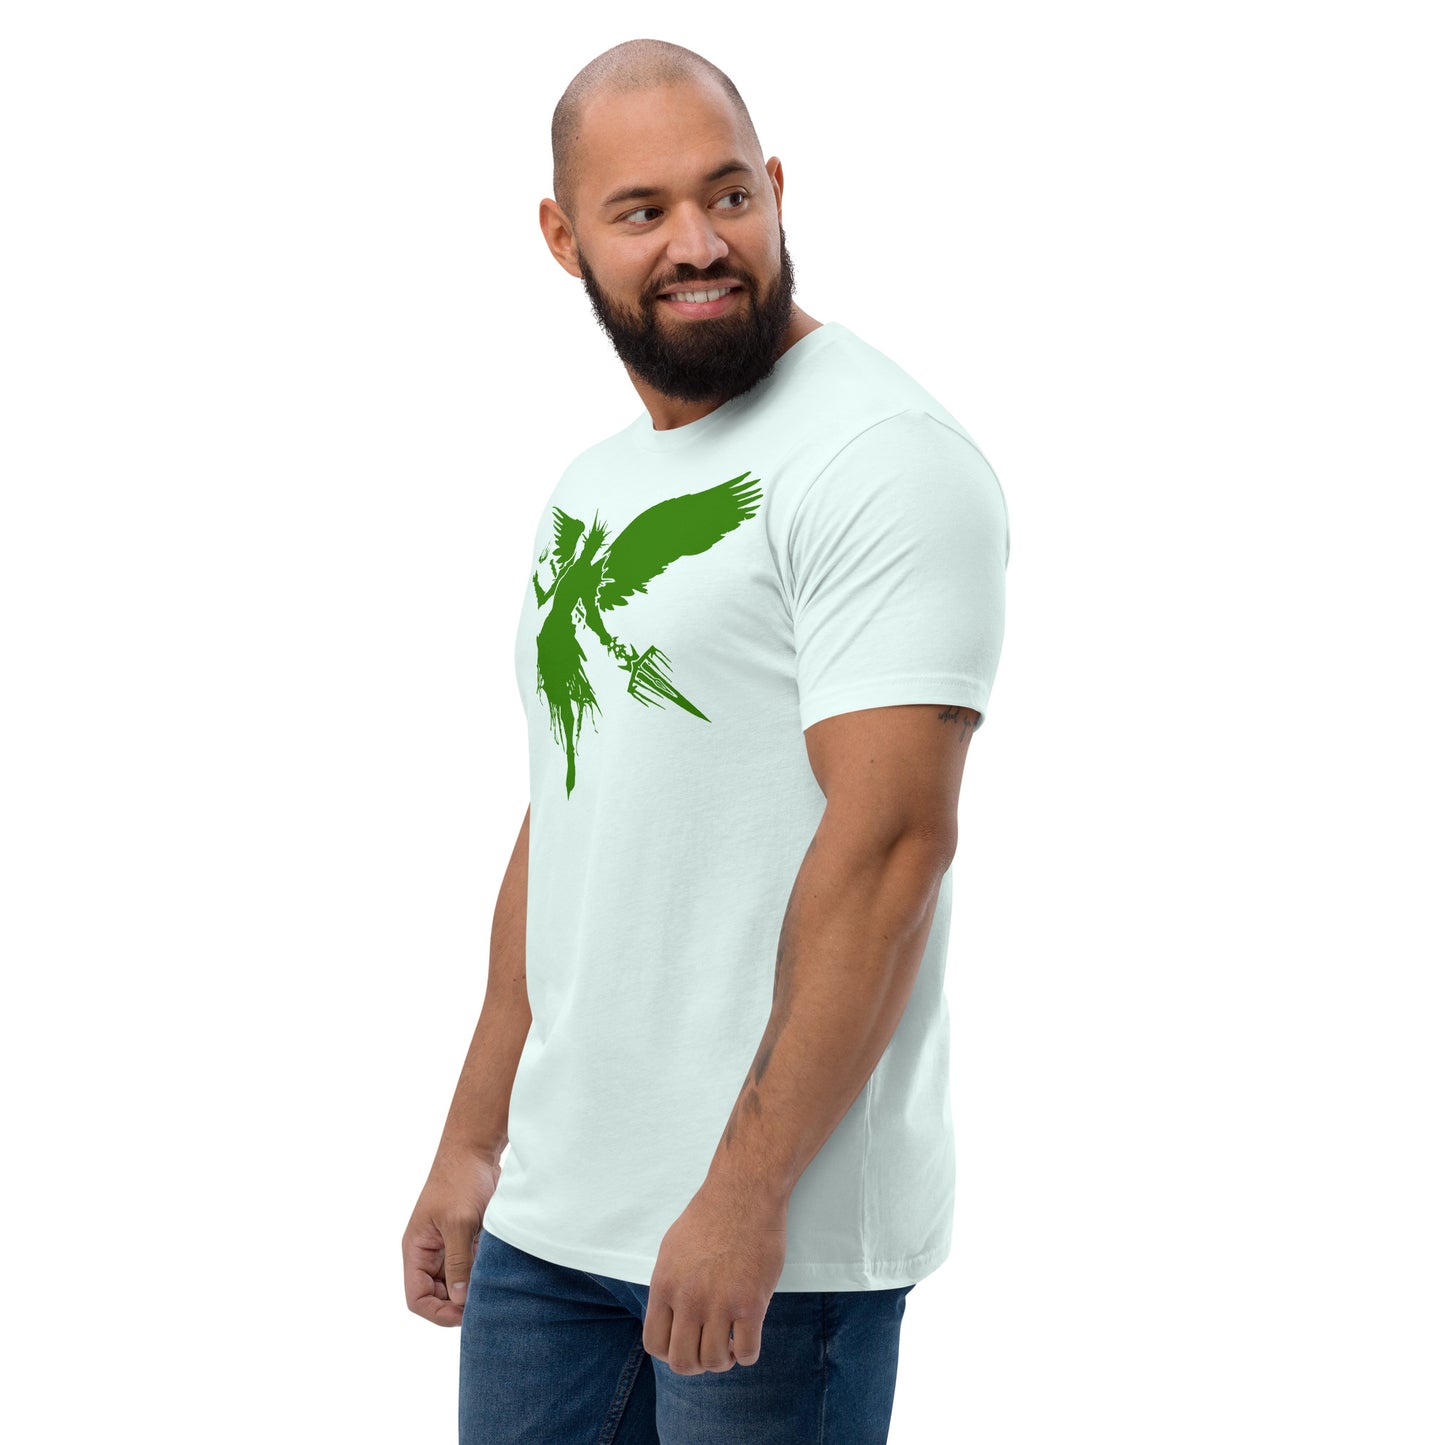 Wraith Eco Short Sleeve T-shirt